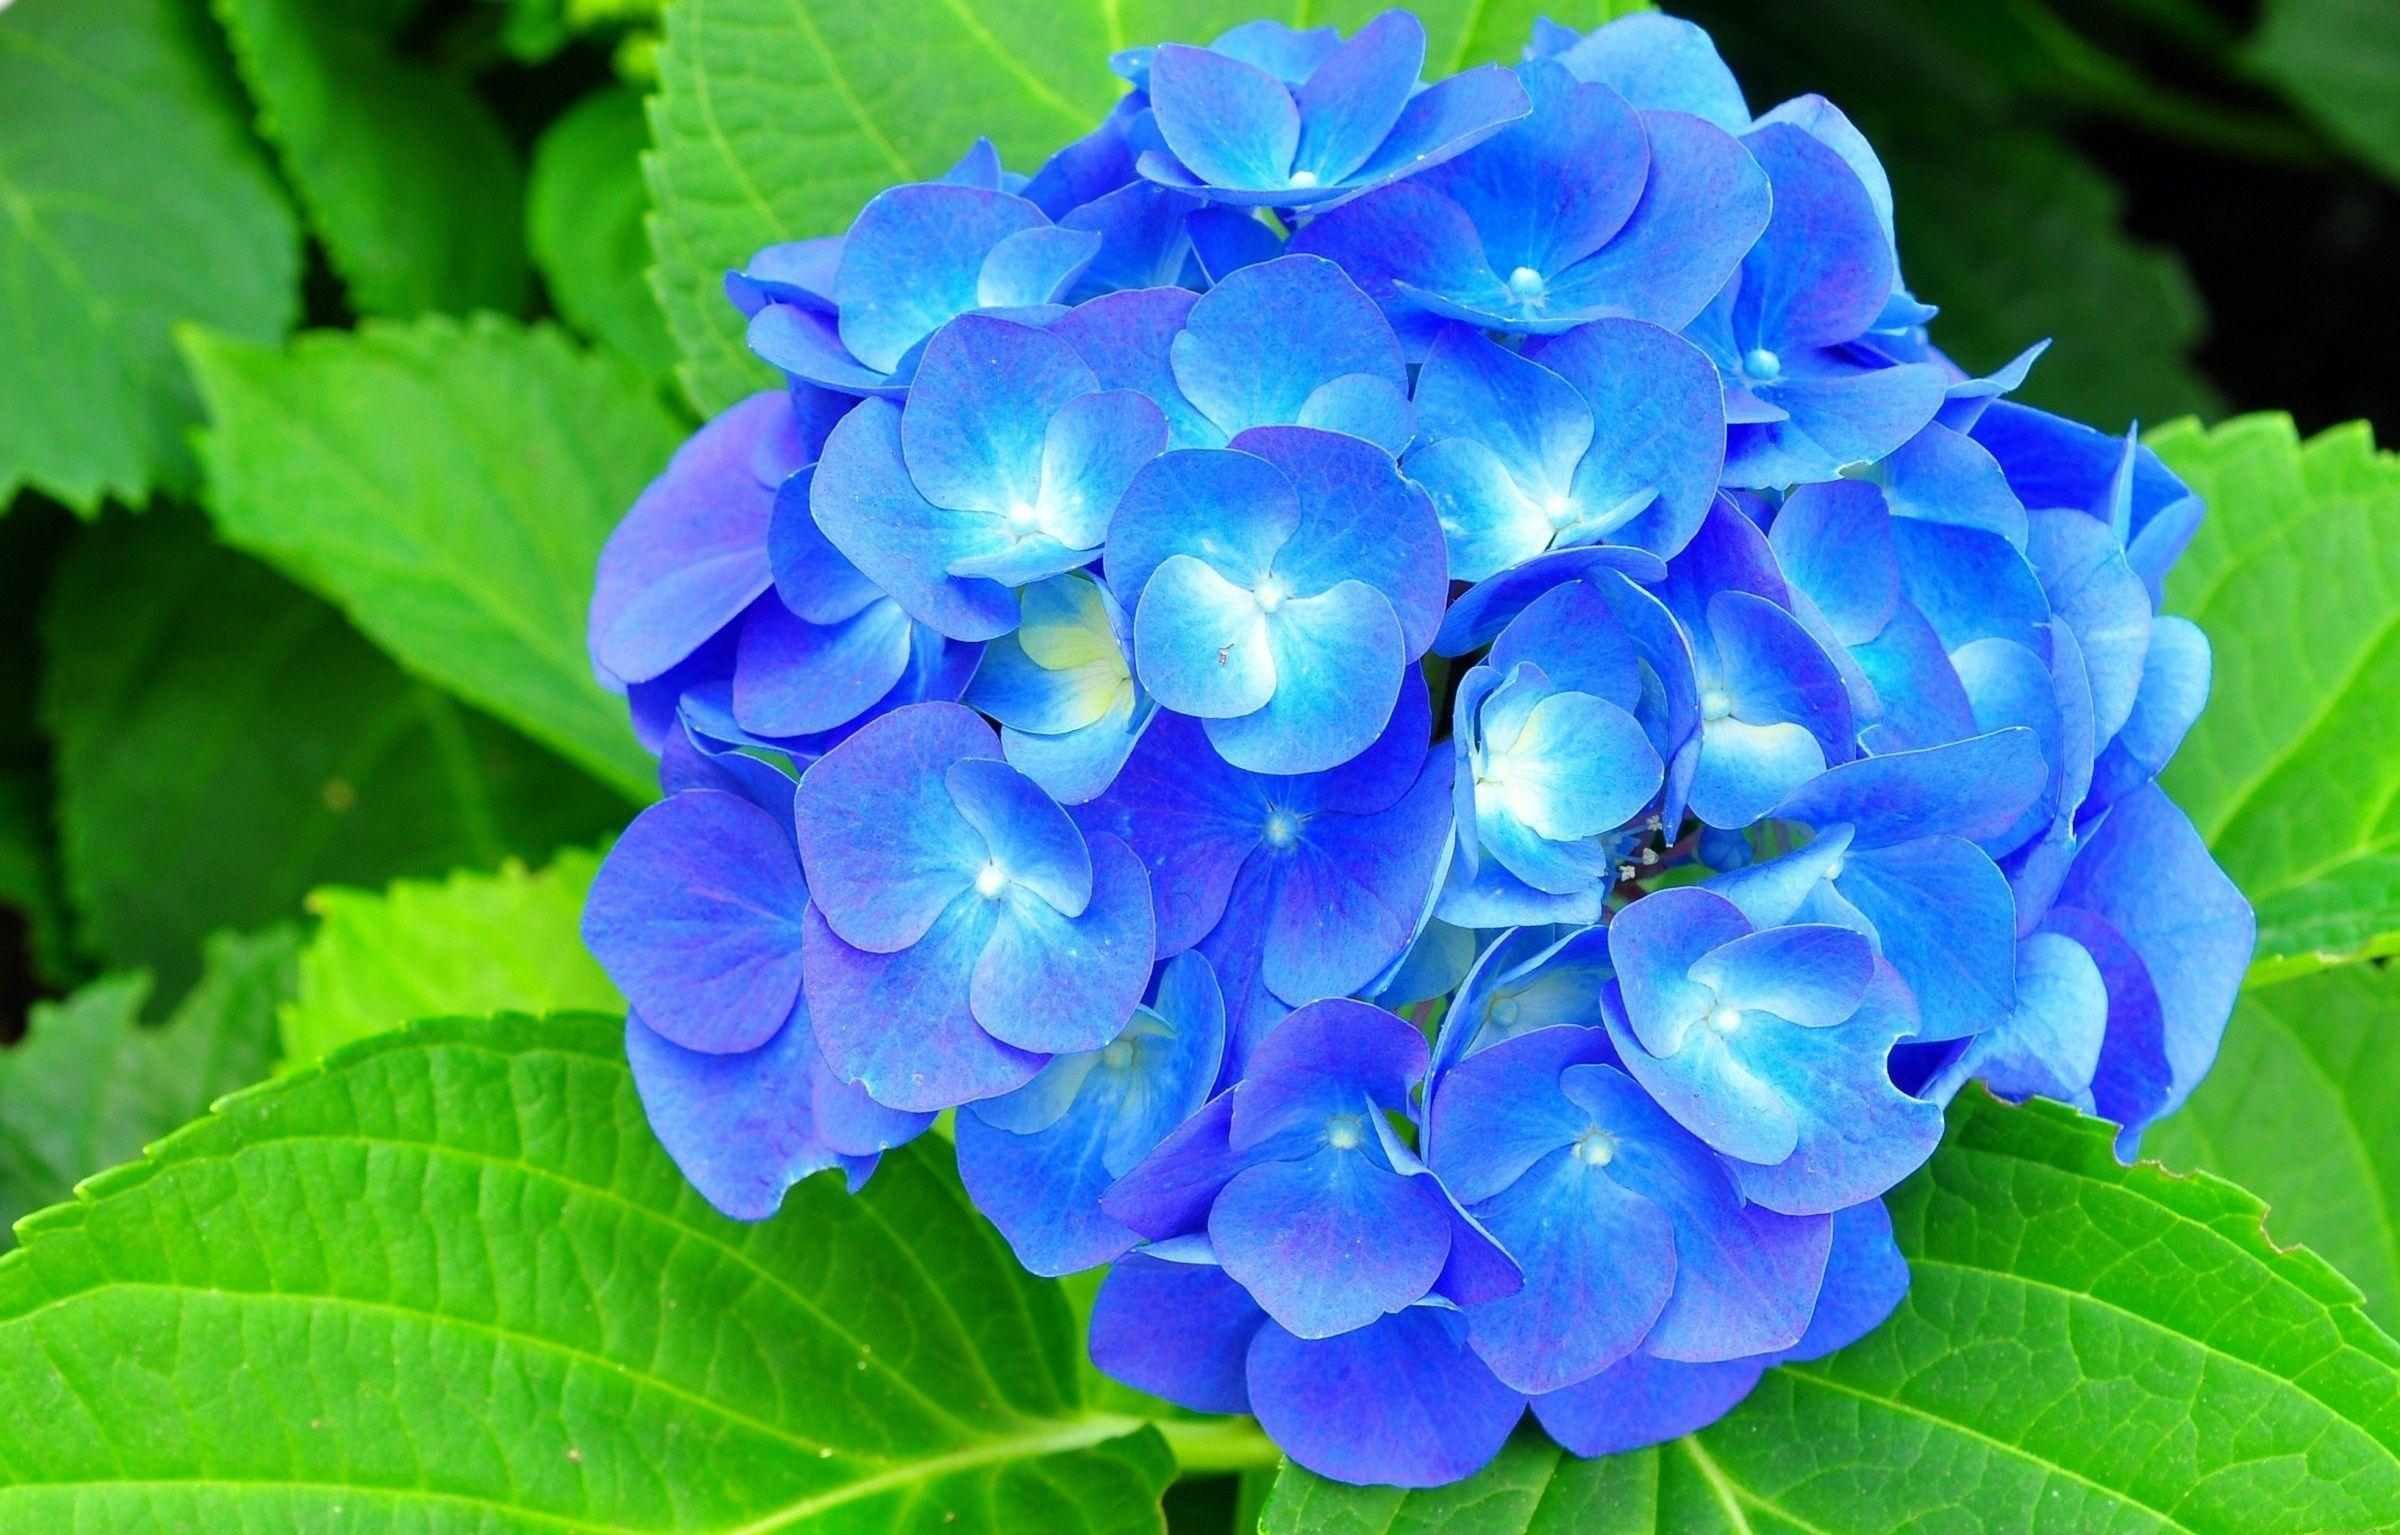 Hd Wallpaper Blue Hydrangea Flowers 700 X 525 72 Kb Jpeg. HD